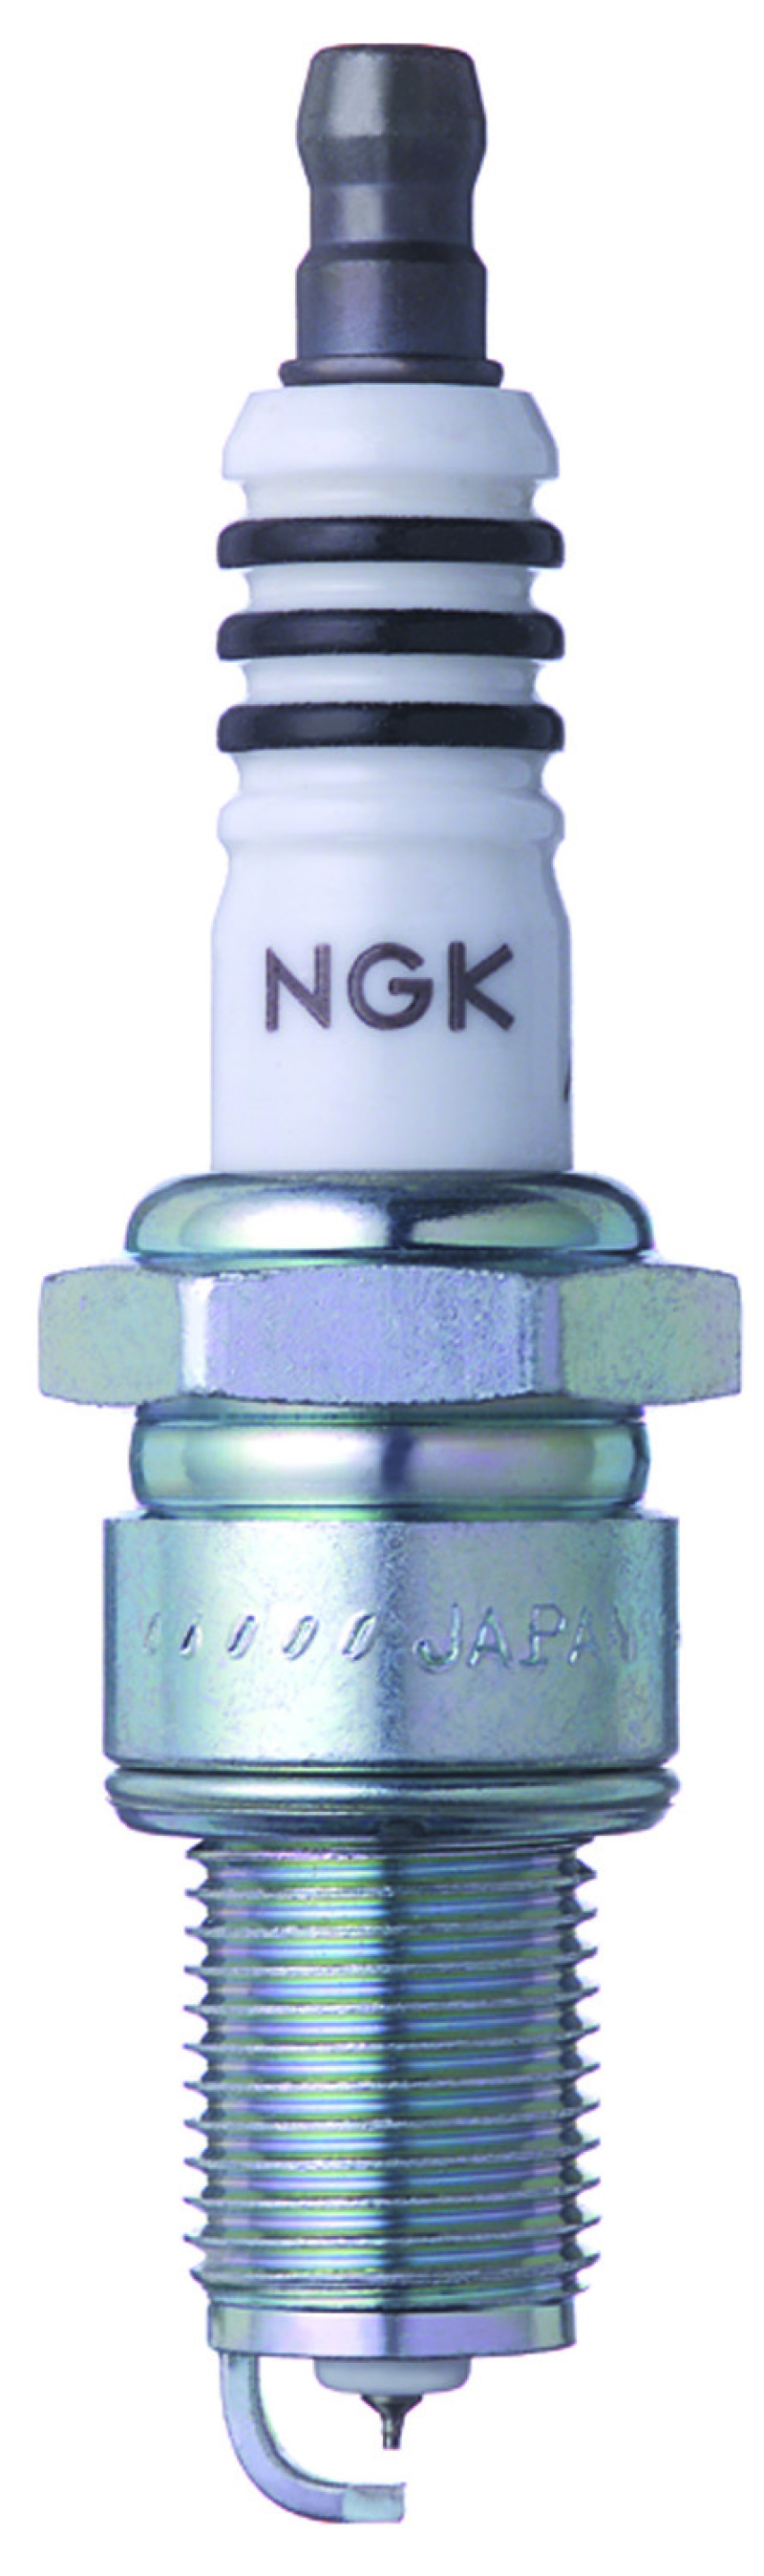 NGK Iridium IX Spark Plug Box of 4 (GR5IX) - 7214